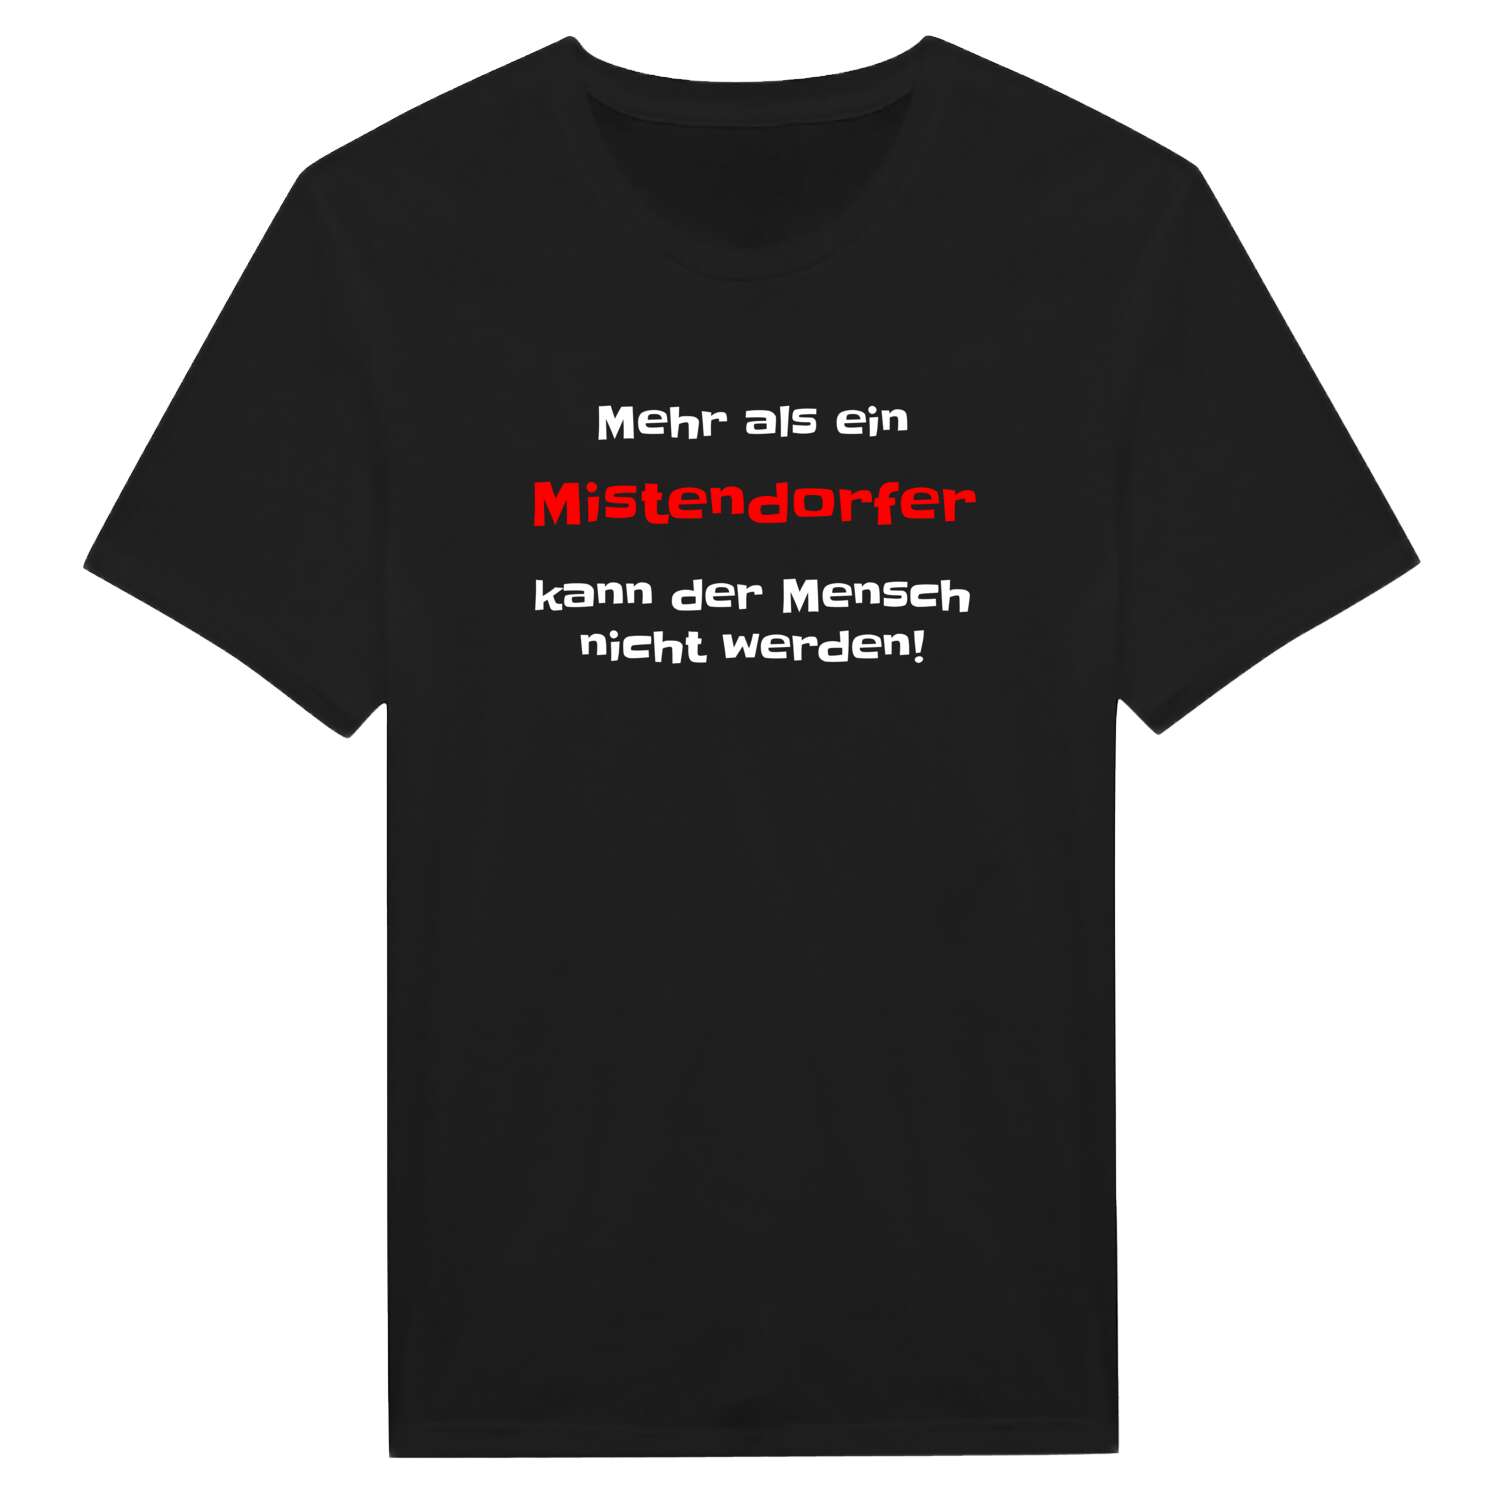 Mistendorf T-Shirt »Mehr als ein«